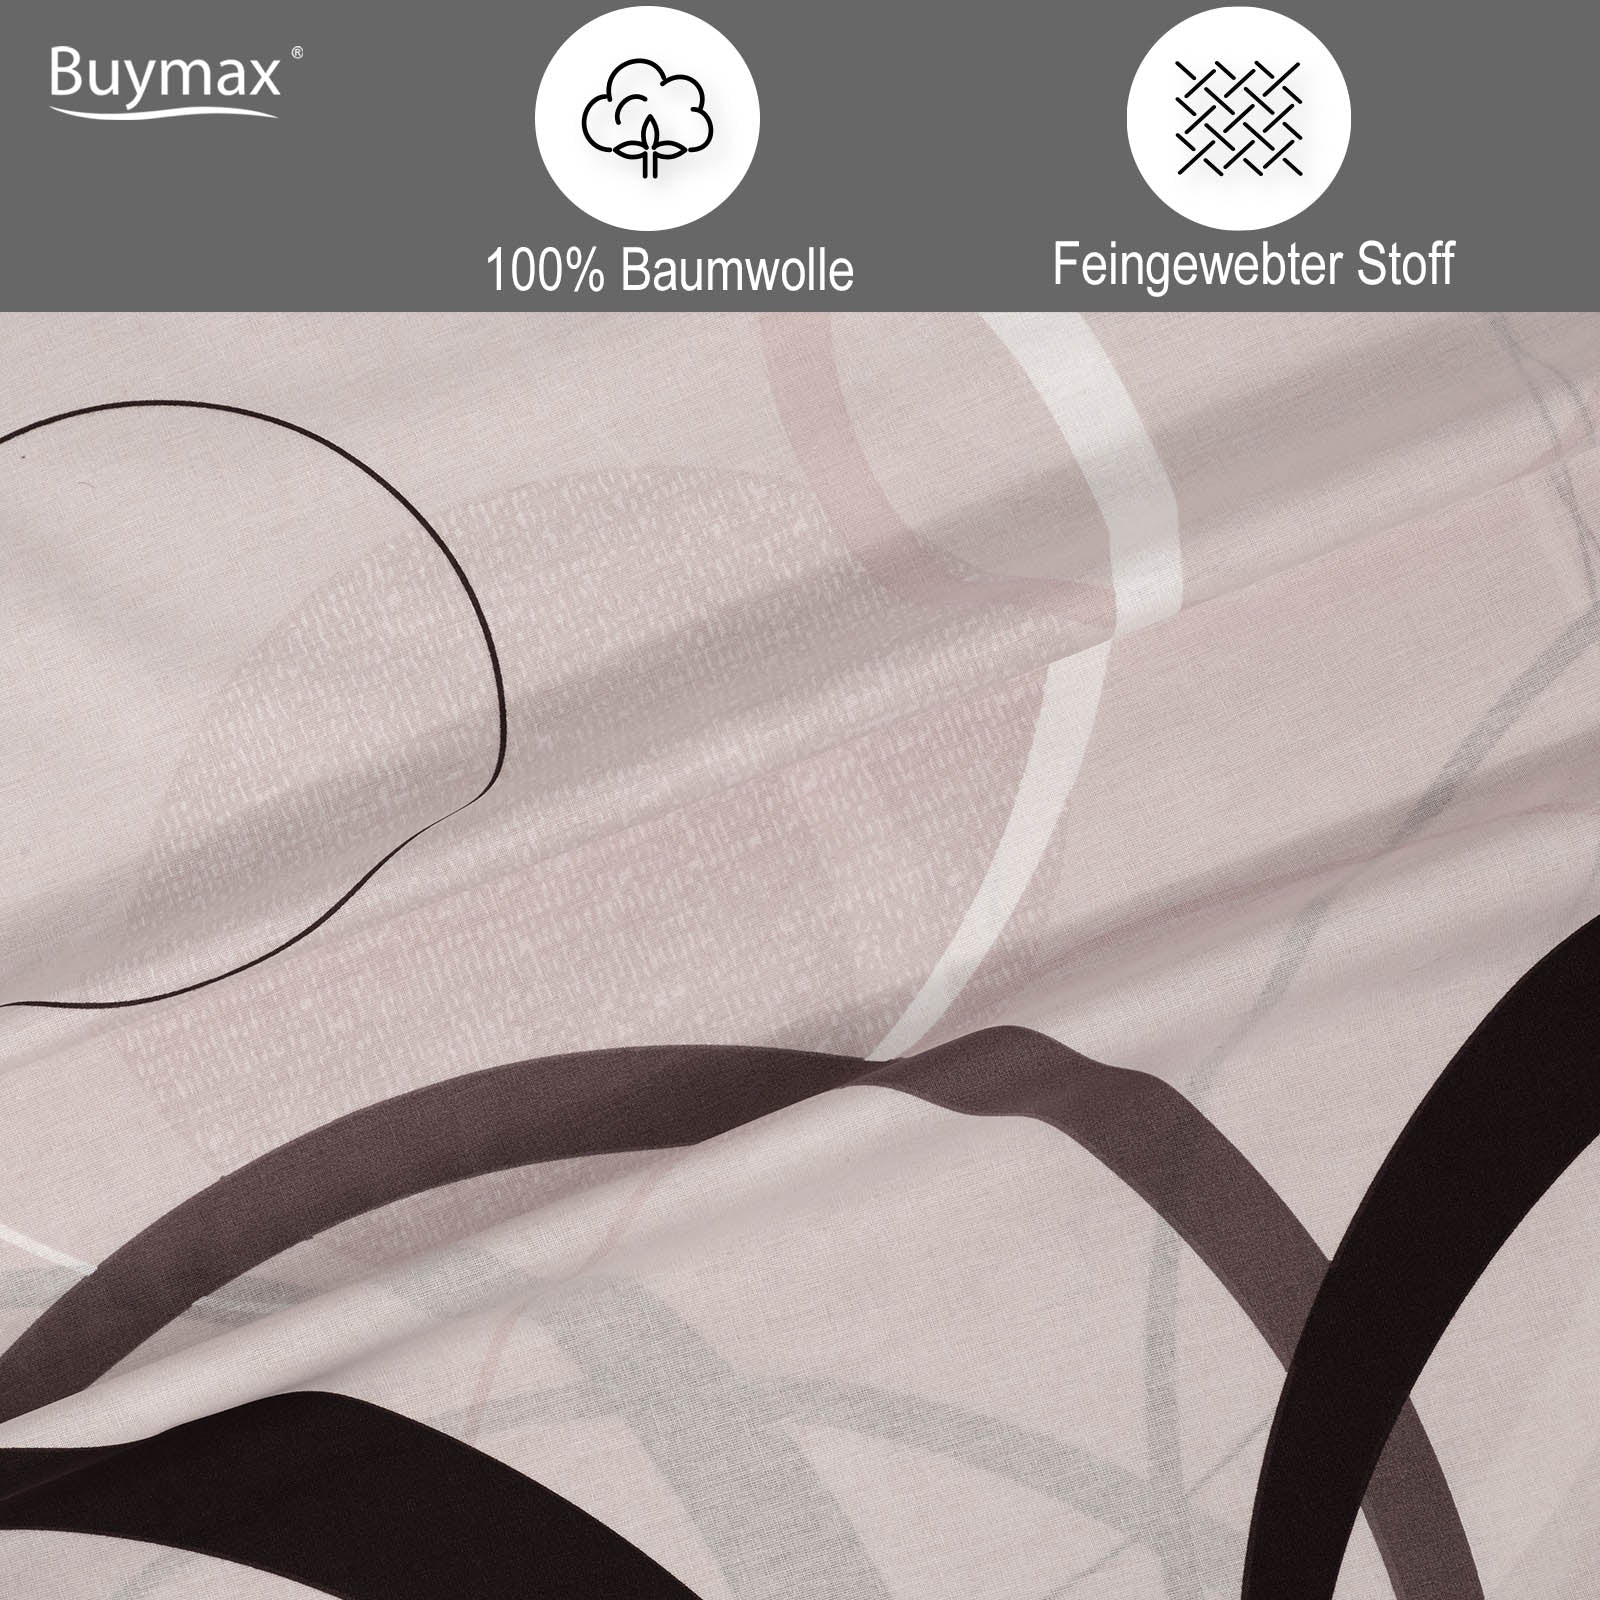 Buymax Renforce Bettwäsche Set, 100% Baumwolle, Beige